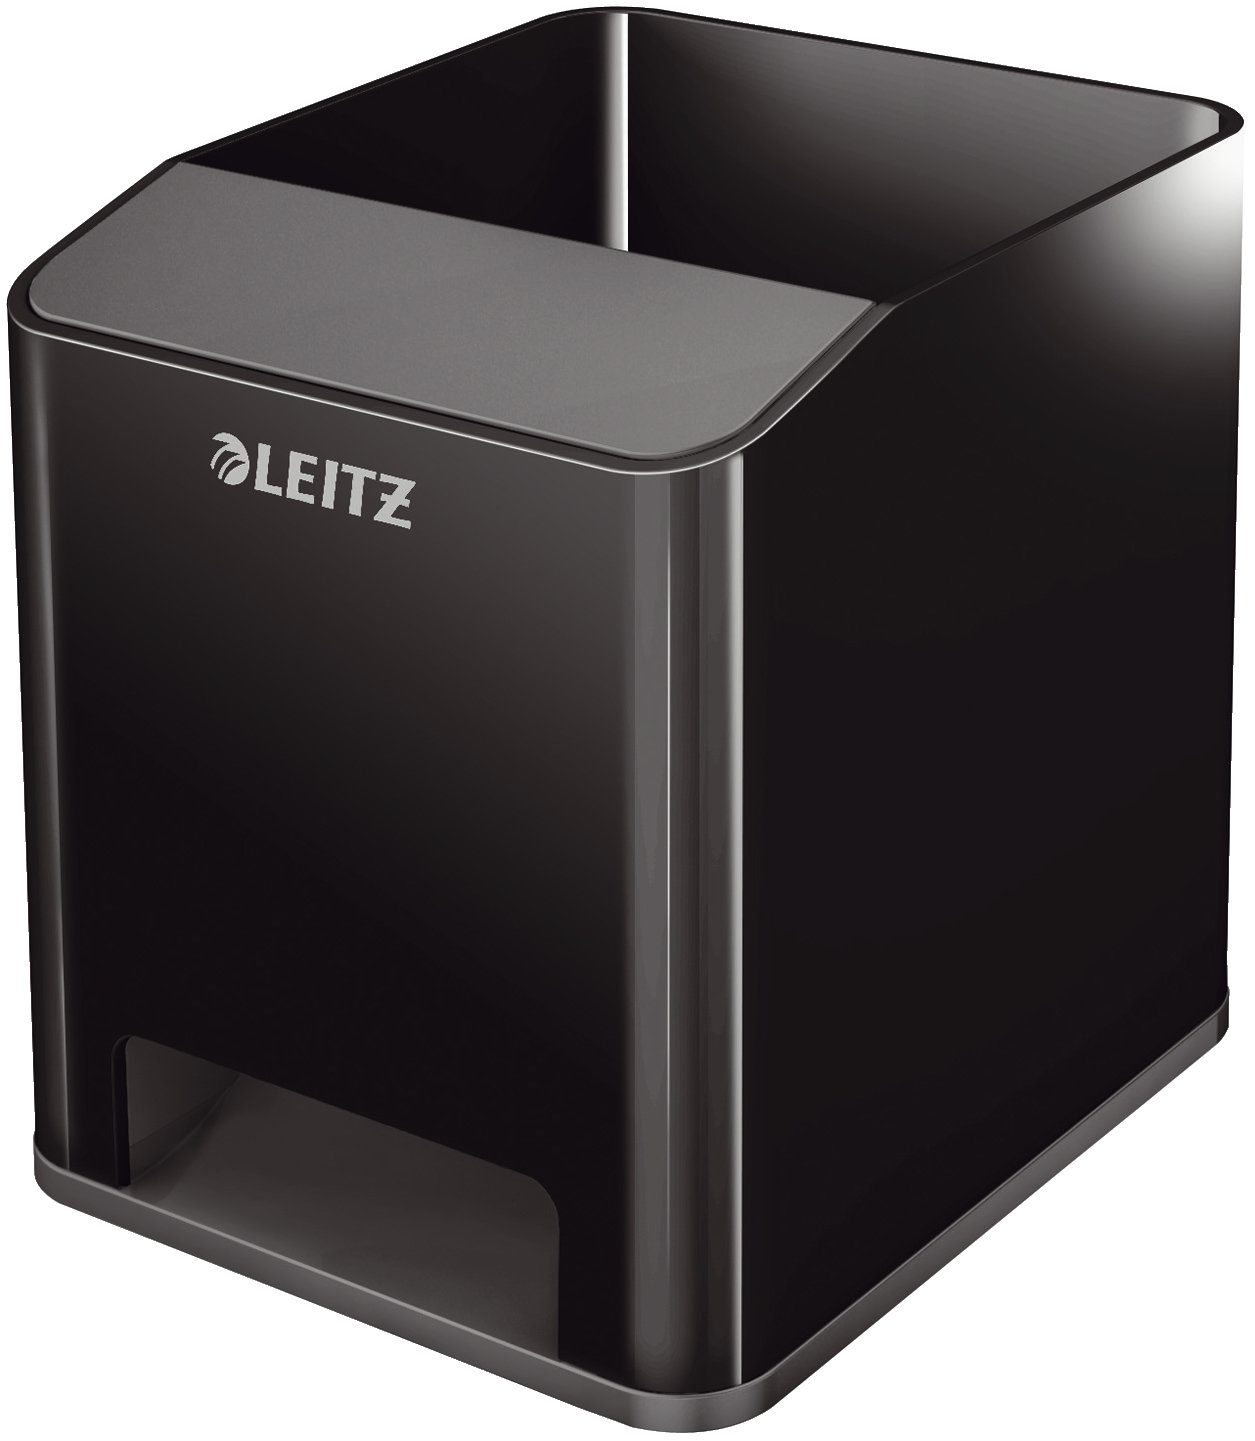 LEITZ Organisationsmappe LEITZ Stiftehalter Duo Colour schwarz/grau Polystyrol 2 Fächer 9,0 x